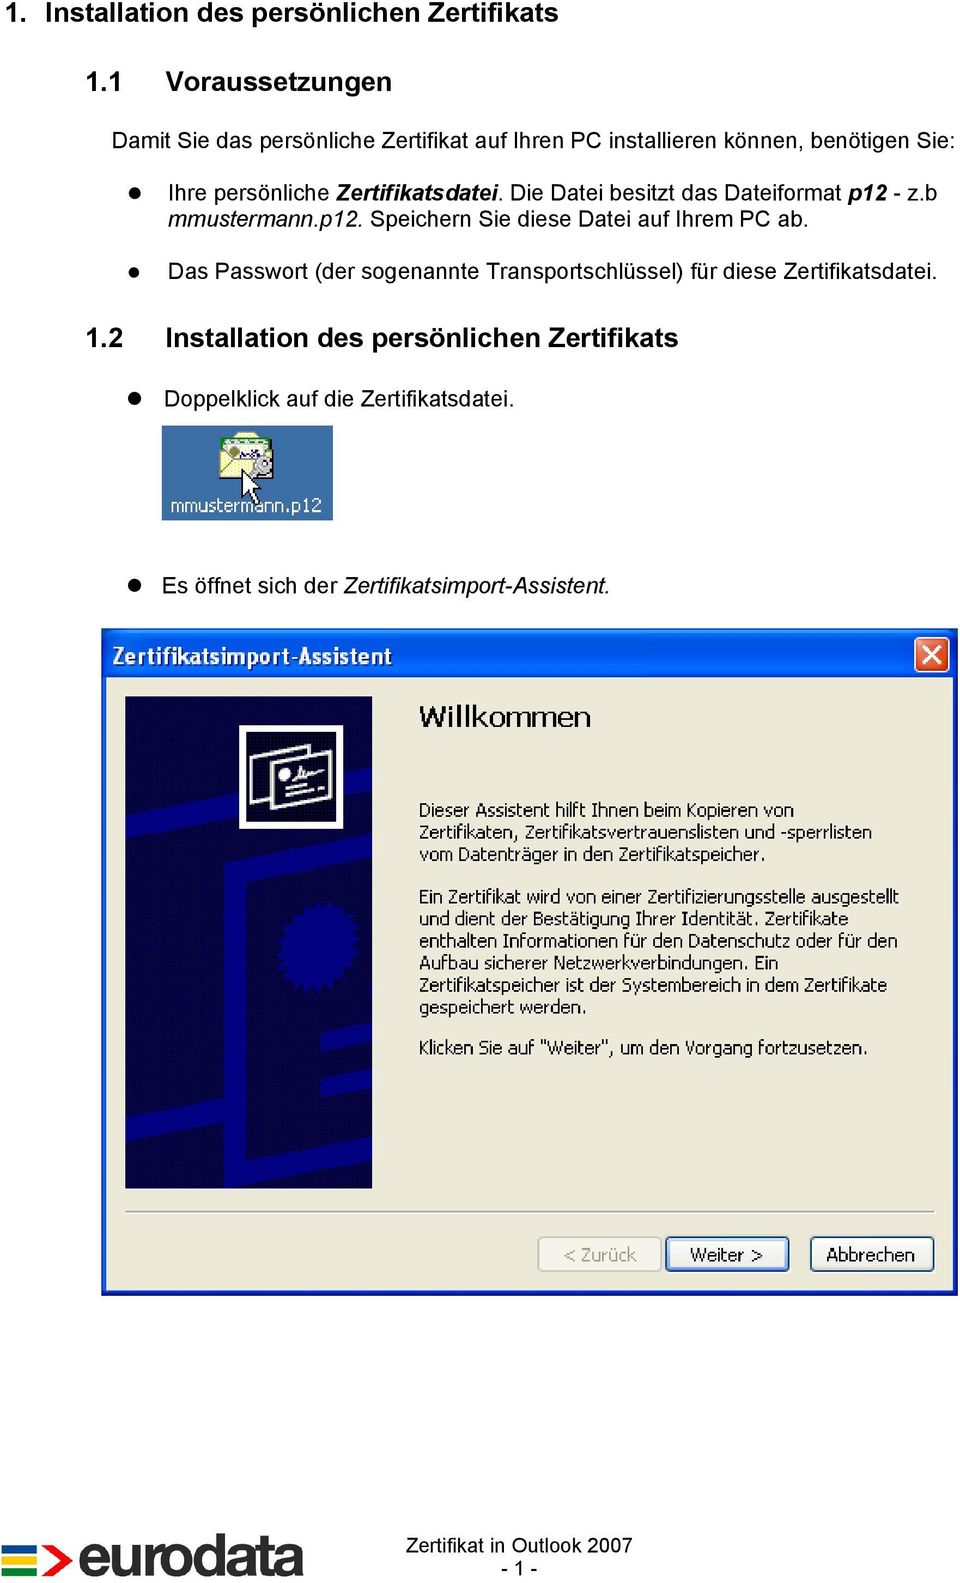 Zertifikatsdatei. Die Datei besitzt das Dateiformat p12 - z.b mmustermann.p12. Speichern Sie diese Datei auf Ihrem PC ab.